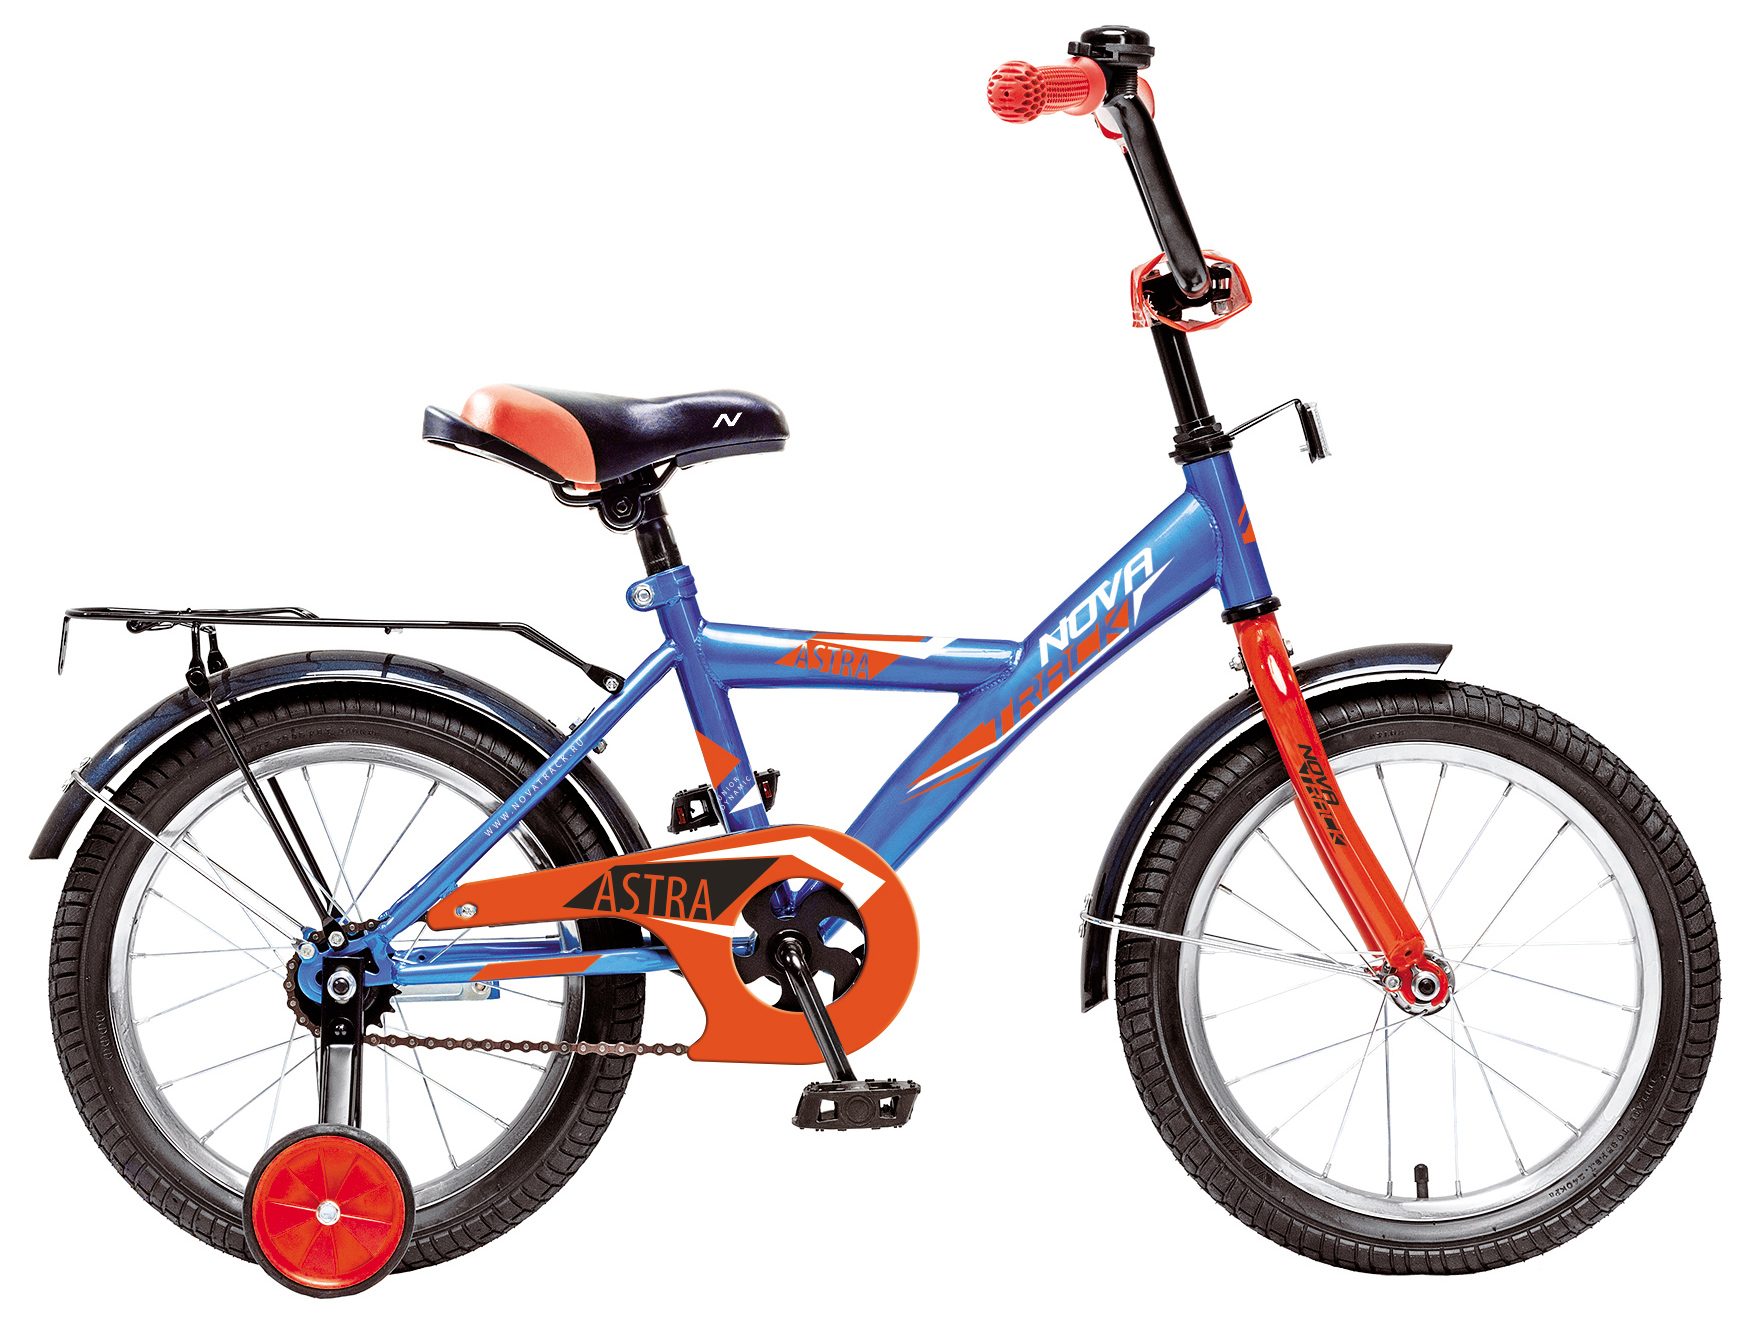  Отзывы о Детском велосипеде Novatrack Astra 16 2019